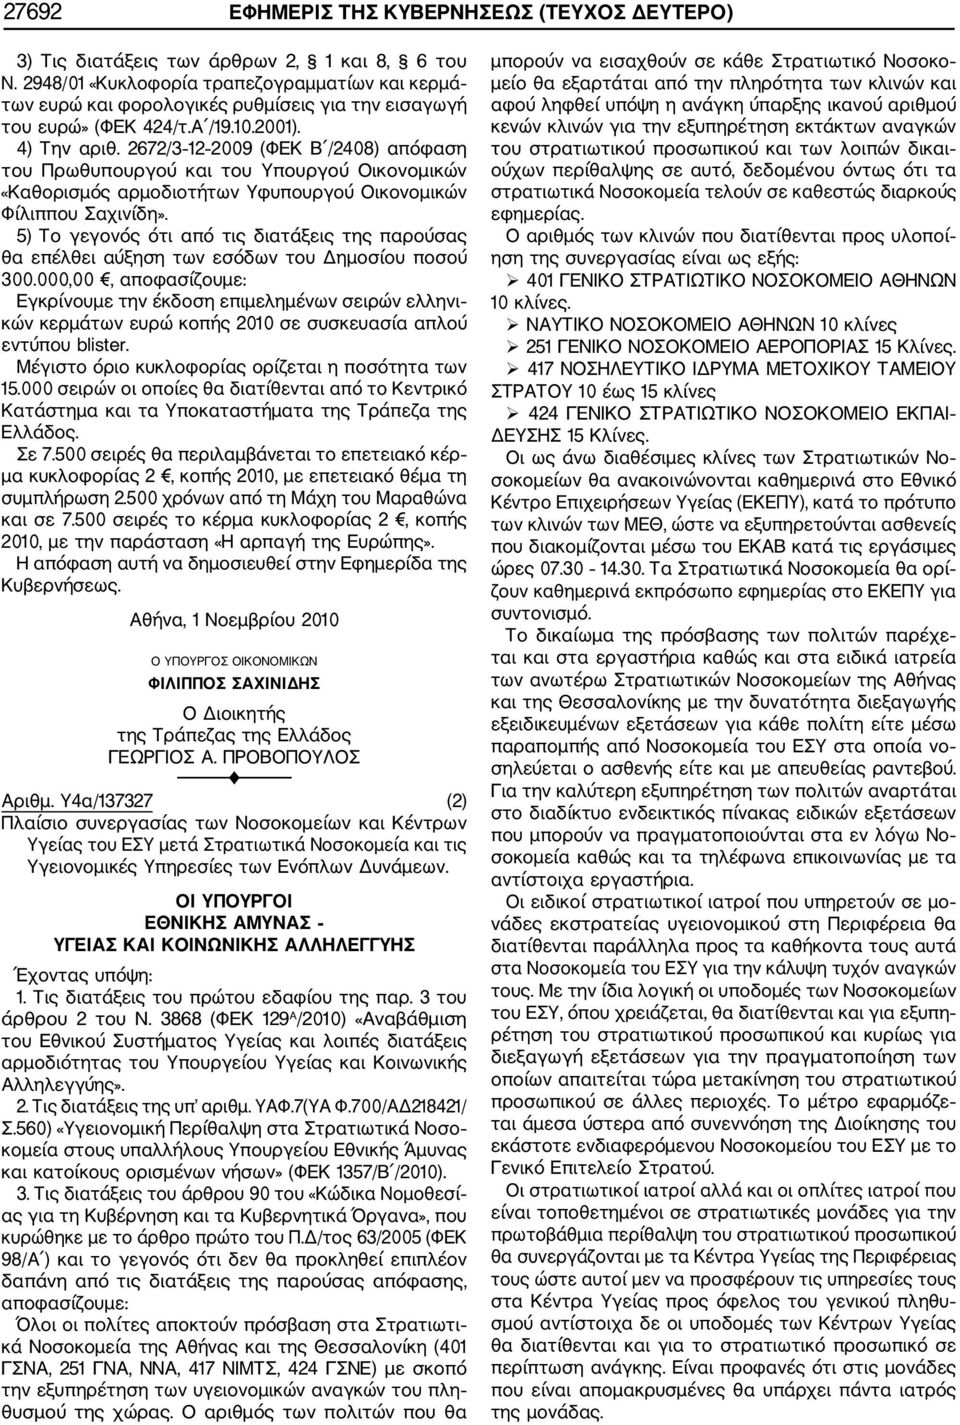 2672/3 12 2009 (ΦΕΚ Β /2408) απόφαση του Πρωθυπουργού και του Υπουργού Οικονομικών «Καθορισμός αρμοδιοτήτων Υφυπουργού Οικονομικών Φίλιππου Σαχινίδη».